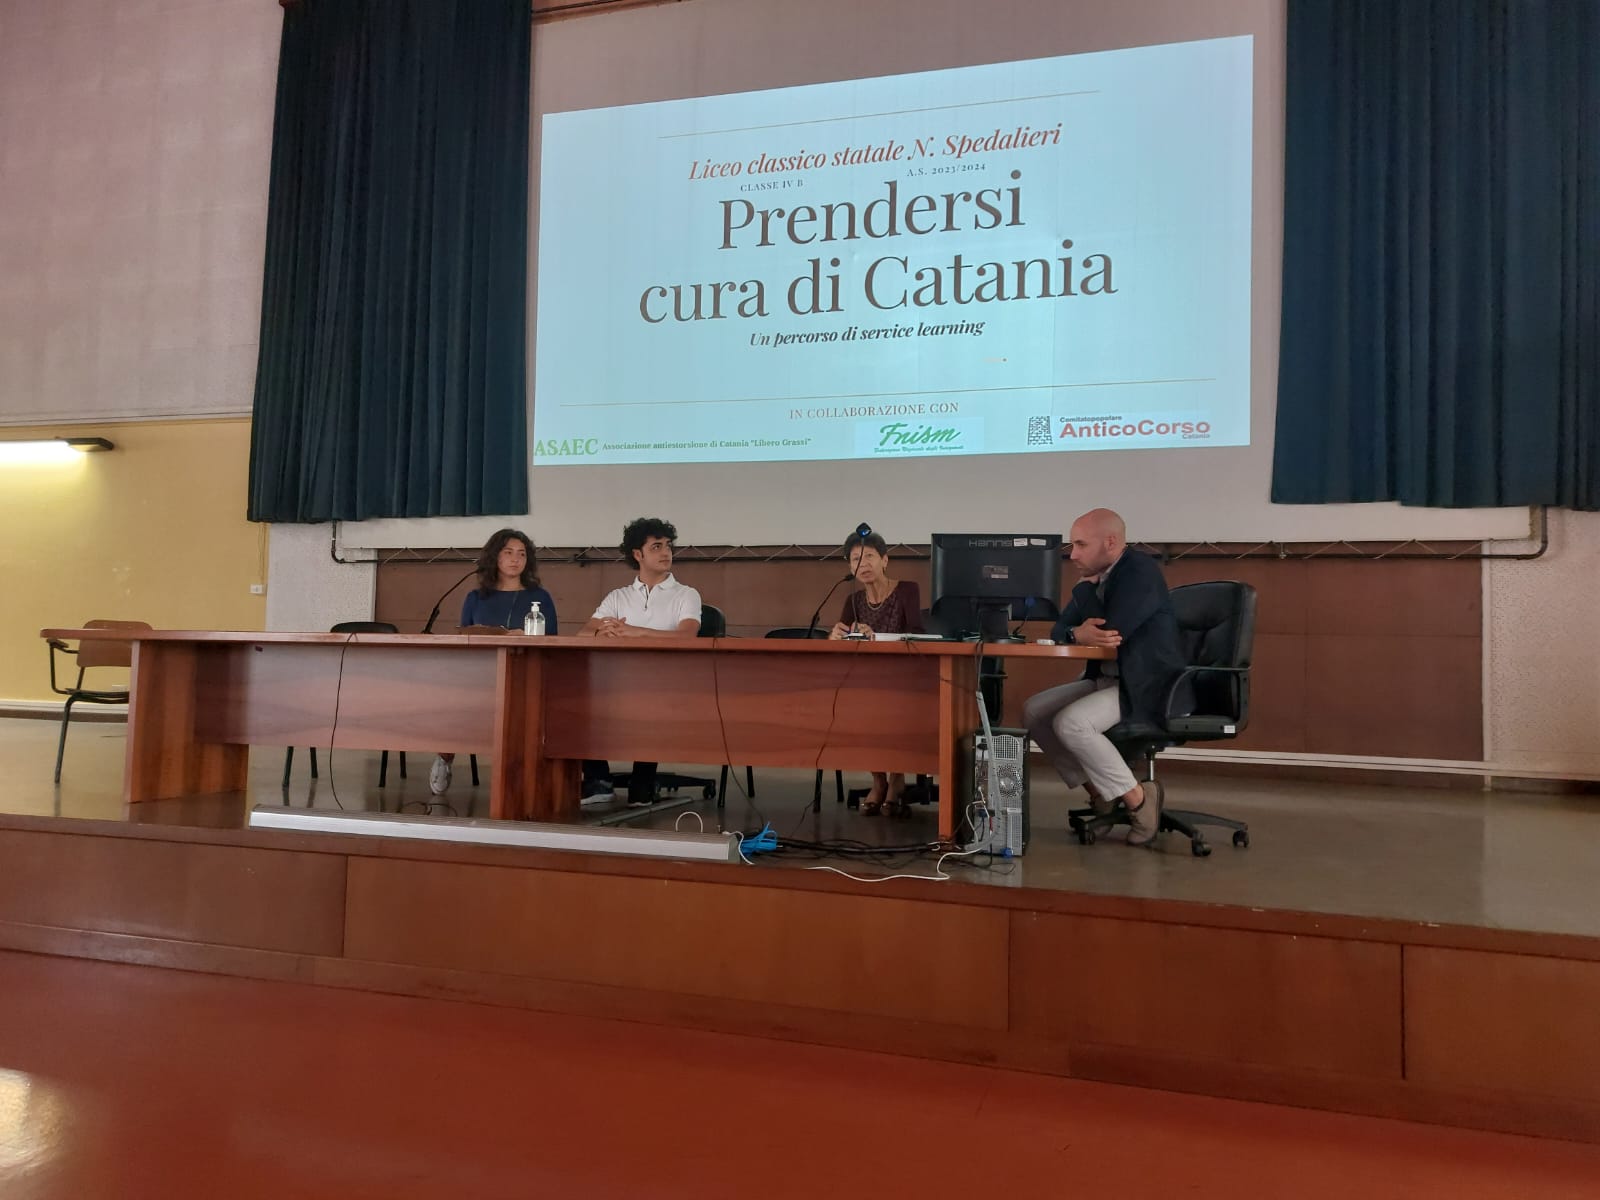 Il Liceo Classico “N. Spedalieri” di Catania ospite del Festival dell’Educazione come scuola di eccellenza per il Service Learning